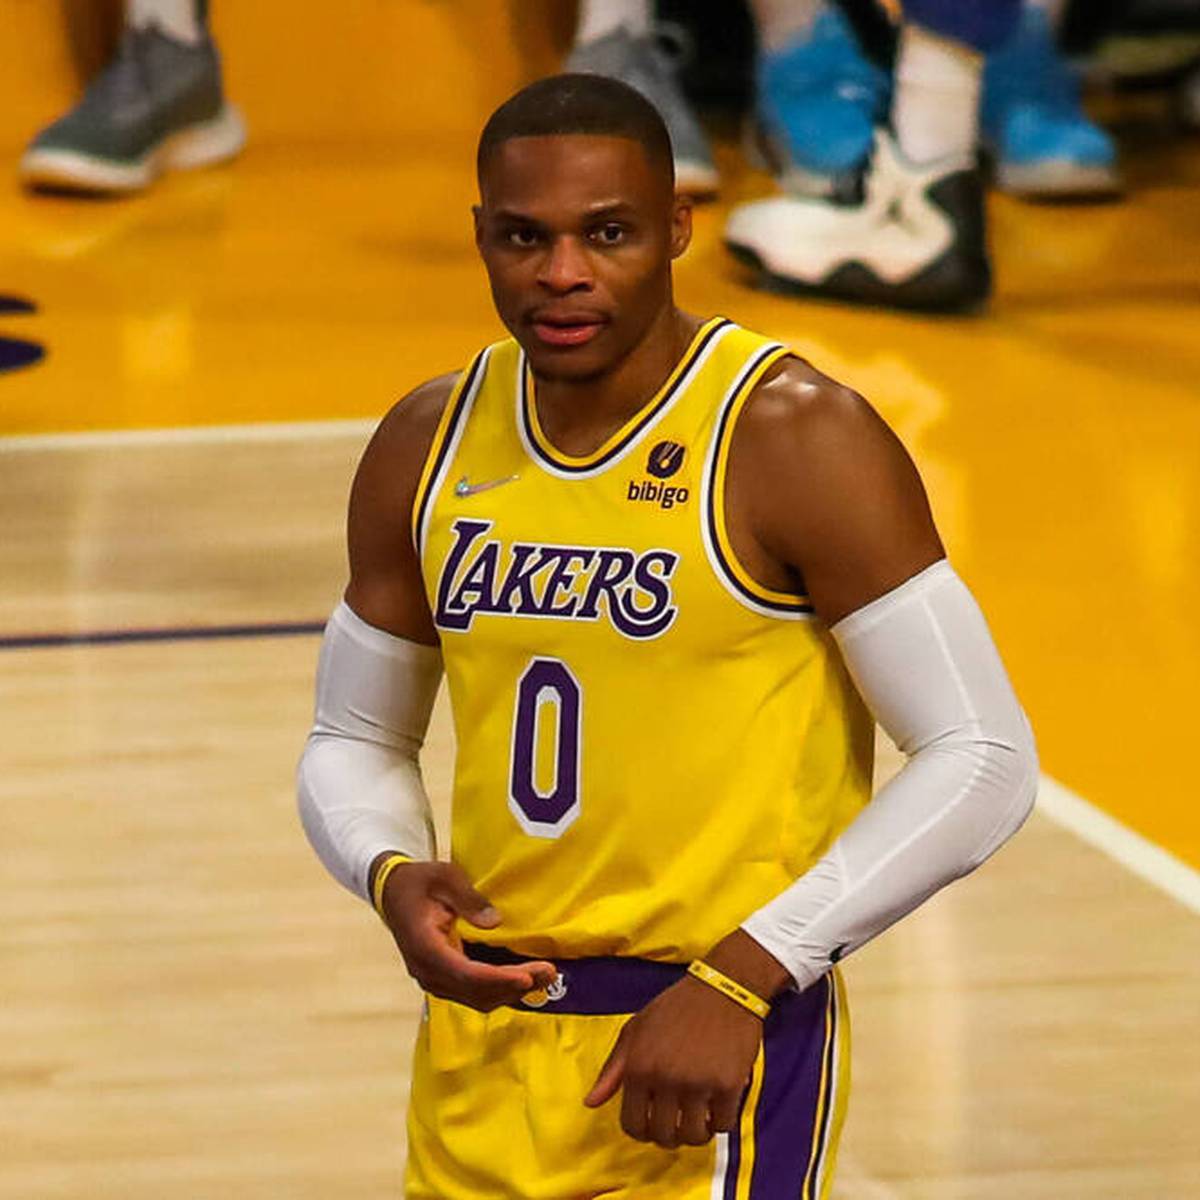 Nach der Niederlage gegen die Indiana Pacers wird es endgültig ungemütlich bei den Lakers. Superstar Russell Westbrook wird von seinem Coach ignoriert - offenbar mit Erlaubnis von ganz oben.